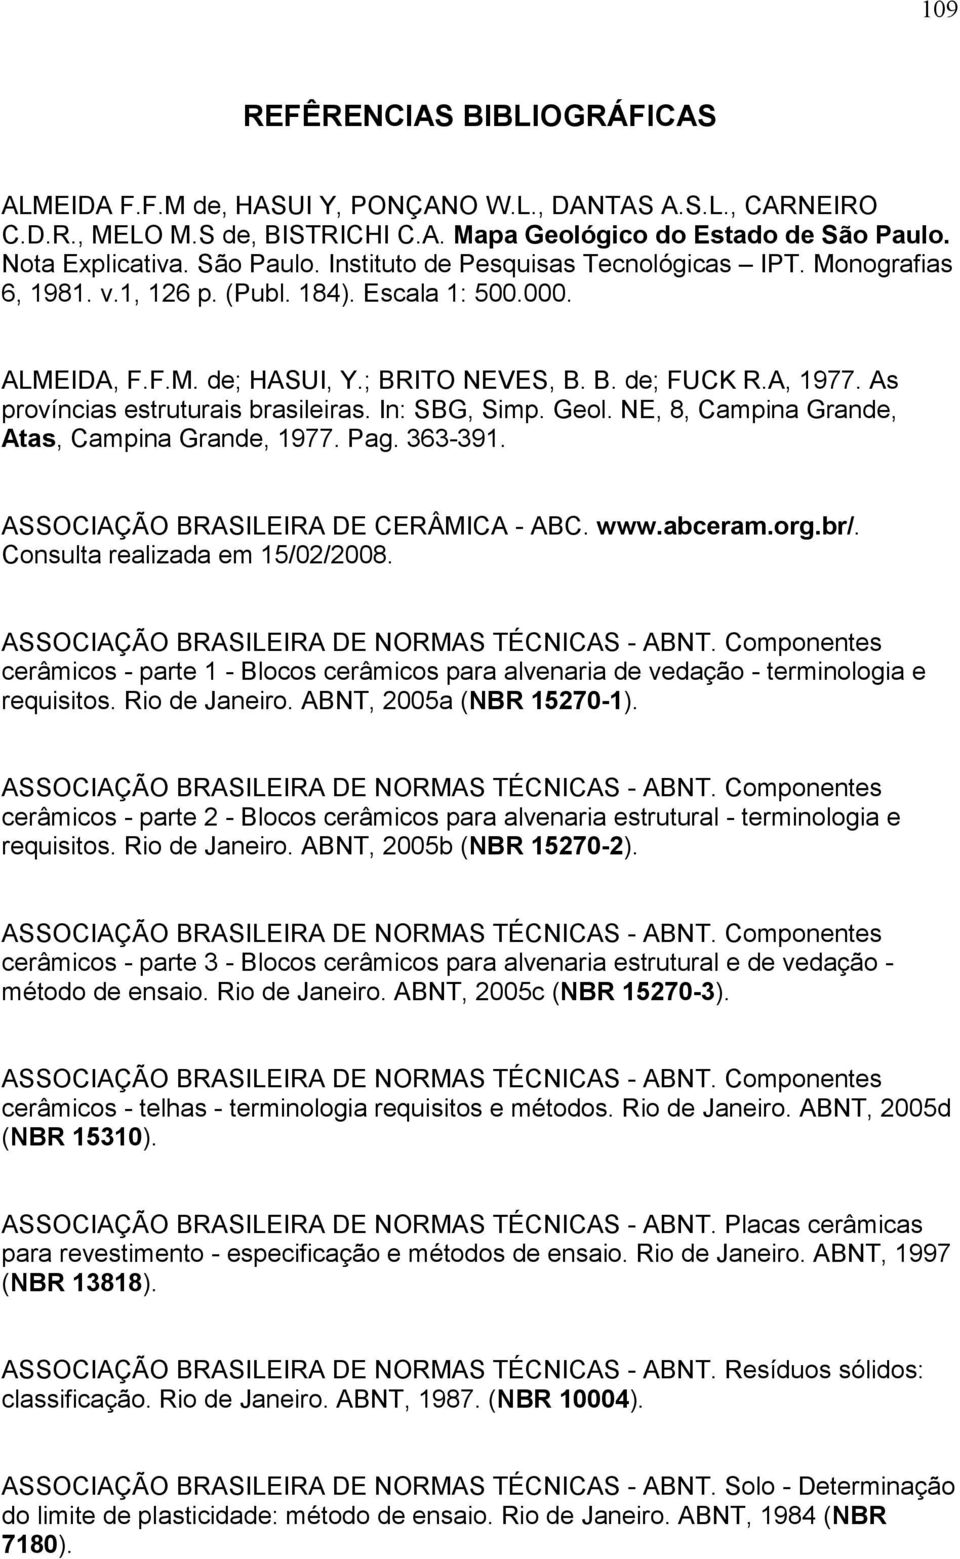 A, 1977. As províncias estruturais brasileiras. In: SBG, Simp. Geol. NE, 8, Campina Grande, Atas, Campina Grande, 1977. Pag. 363-391. ASSOCIAÇÃO BRASILEIRA DE CERÂMICA - ABC. www.abceram.org.br/.